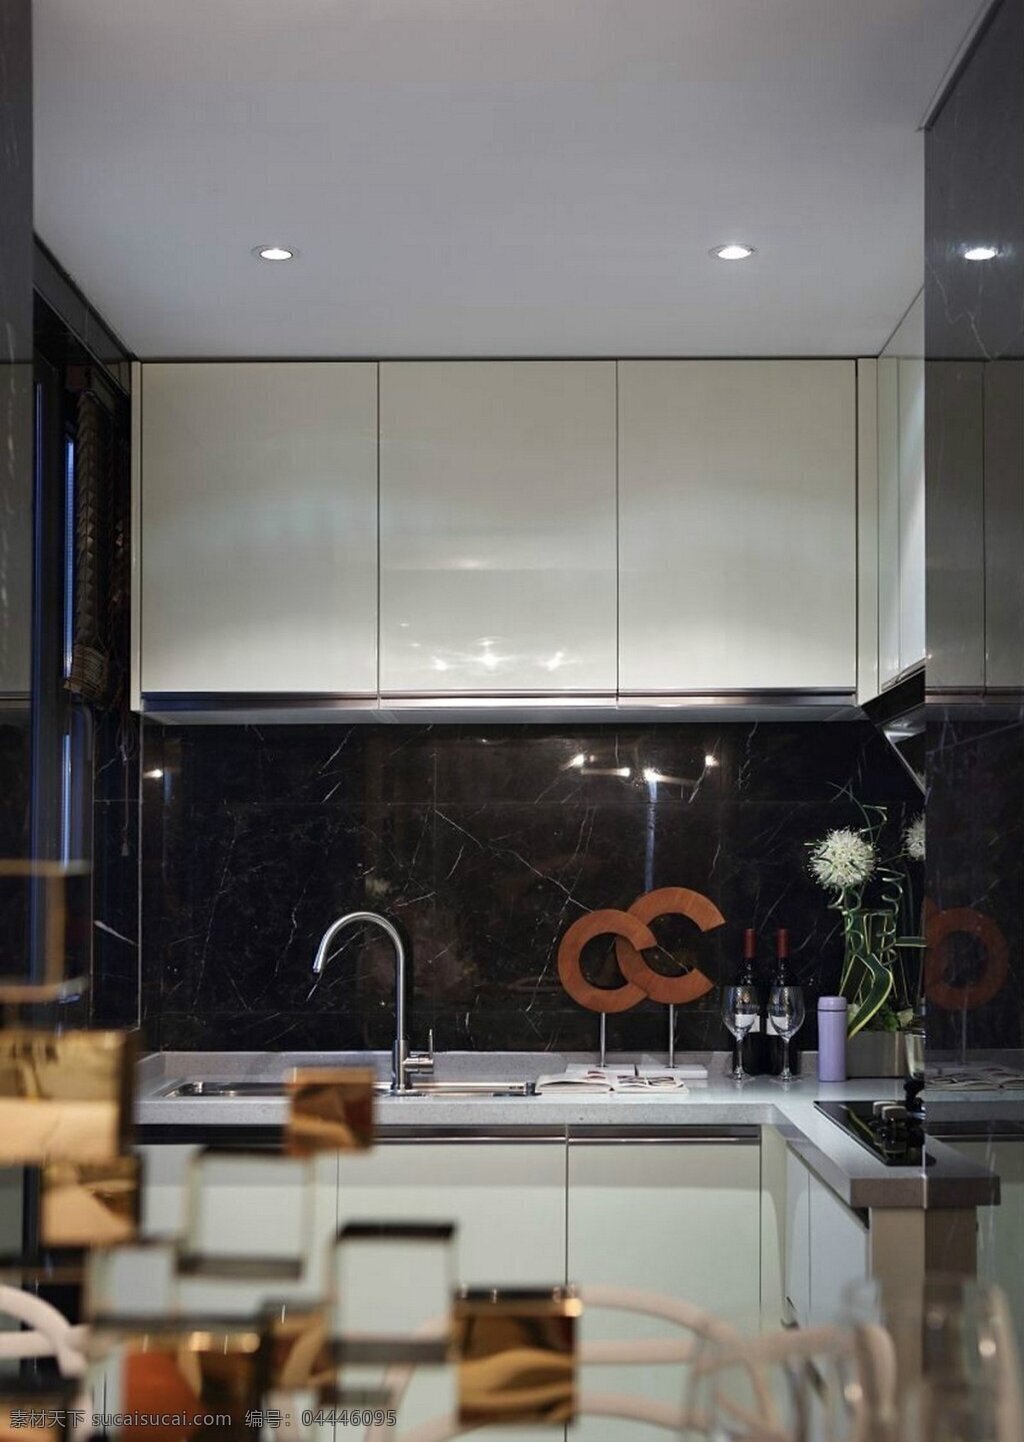 现代 简约 风 室内设计 厨房 洗菜池 效果图 料理台 壁柜 家装